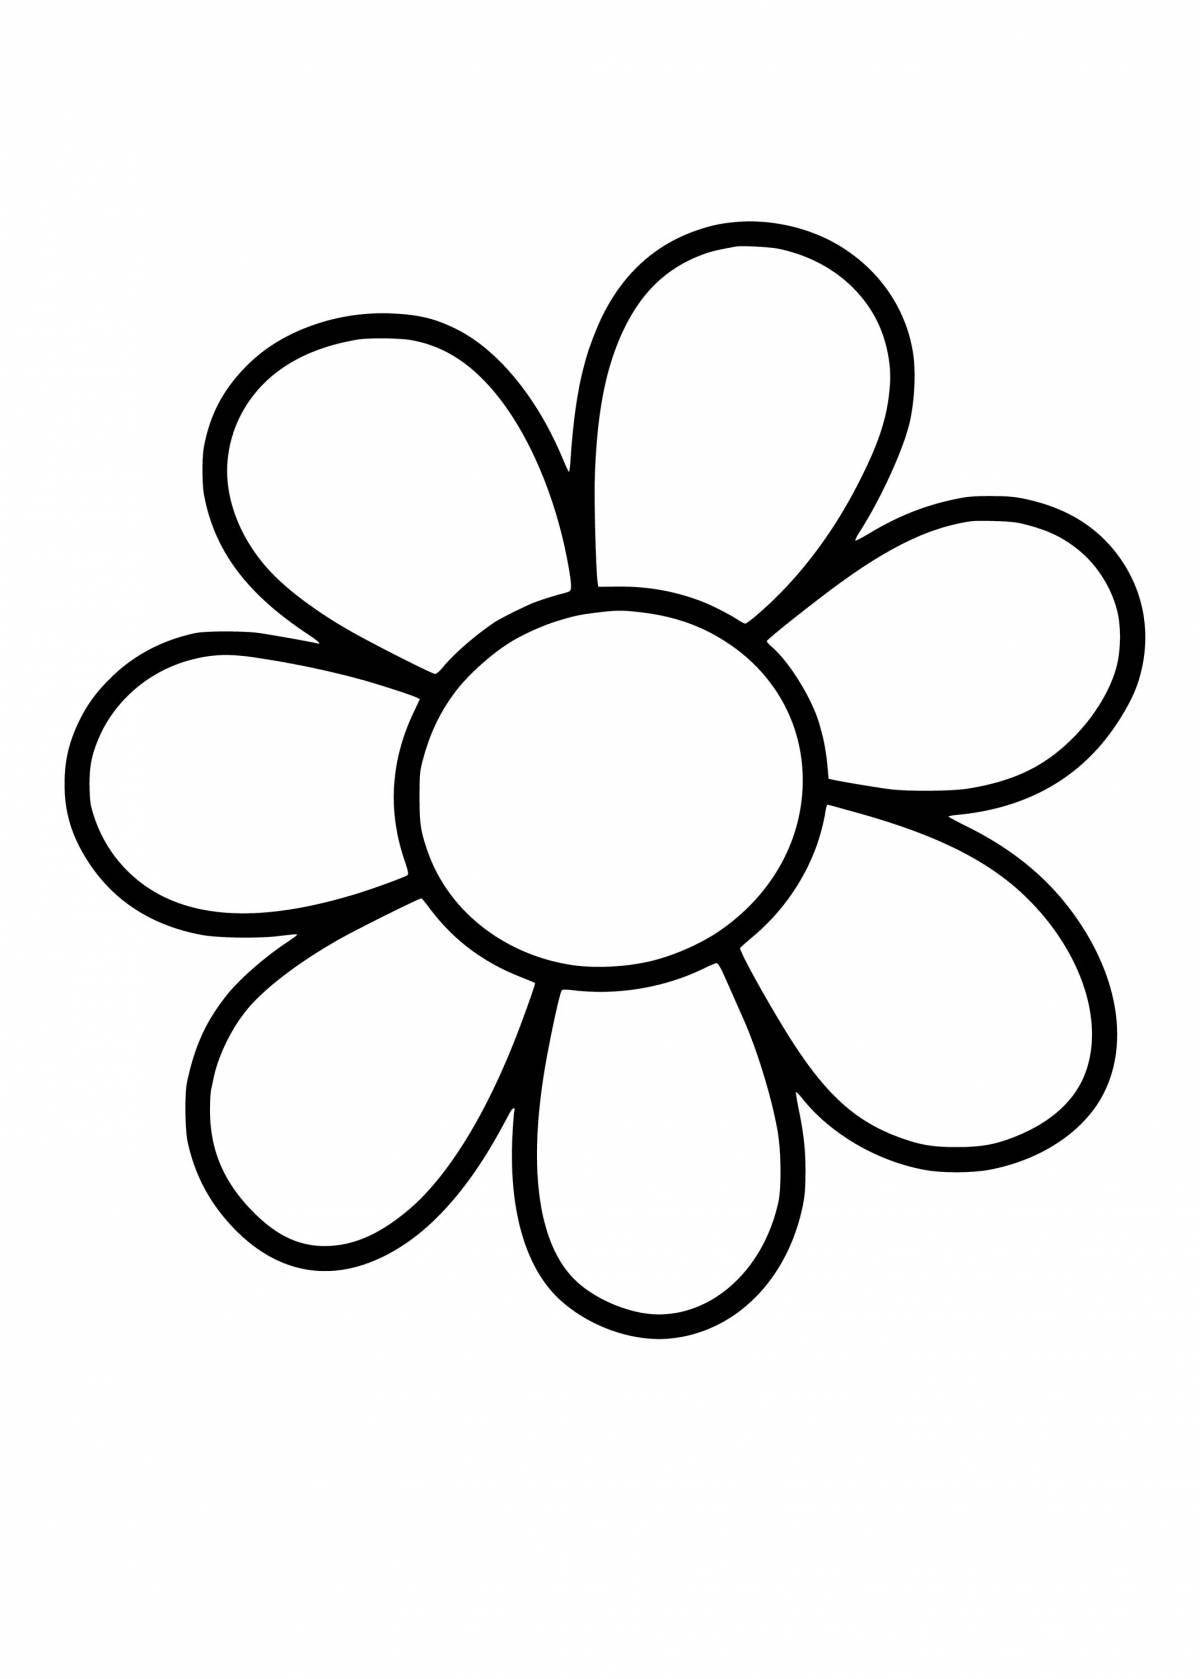 Великолепная раскраска цветок семицветик для детей 3-4 лет